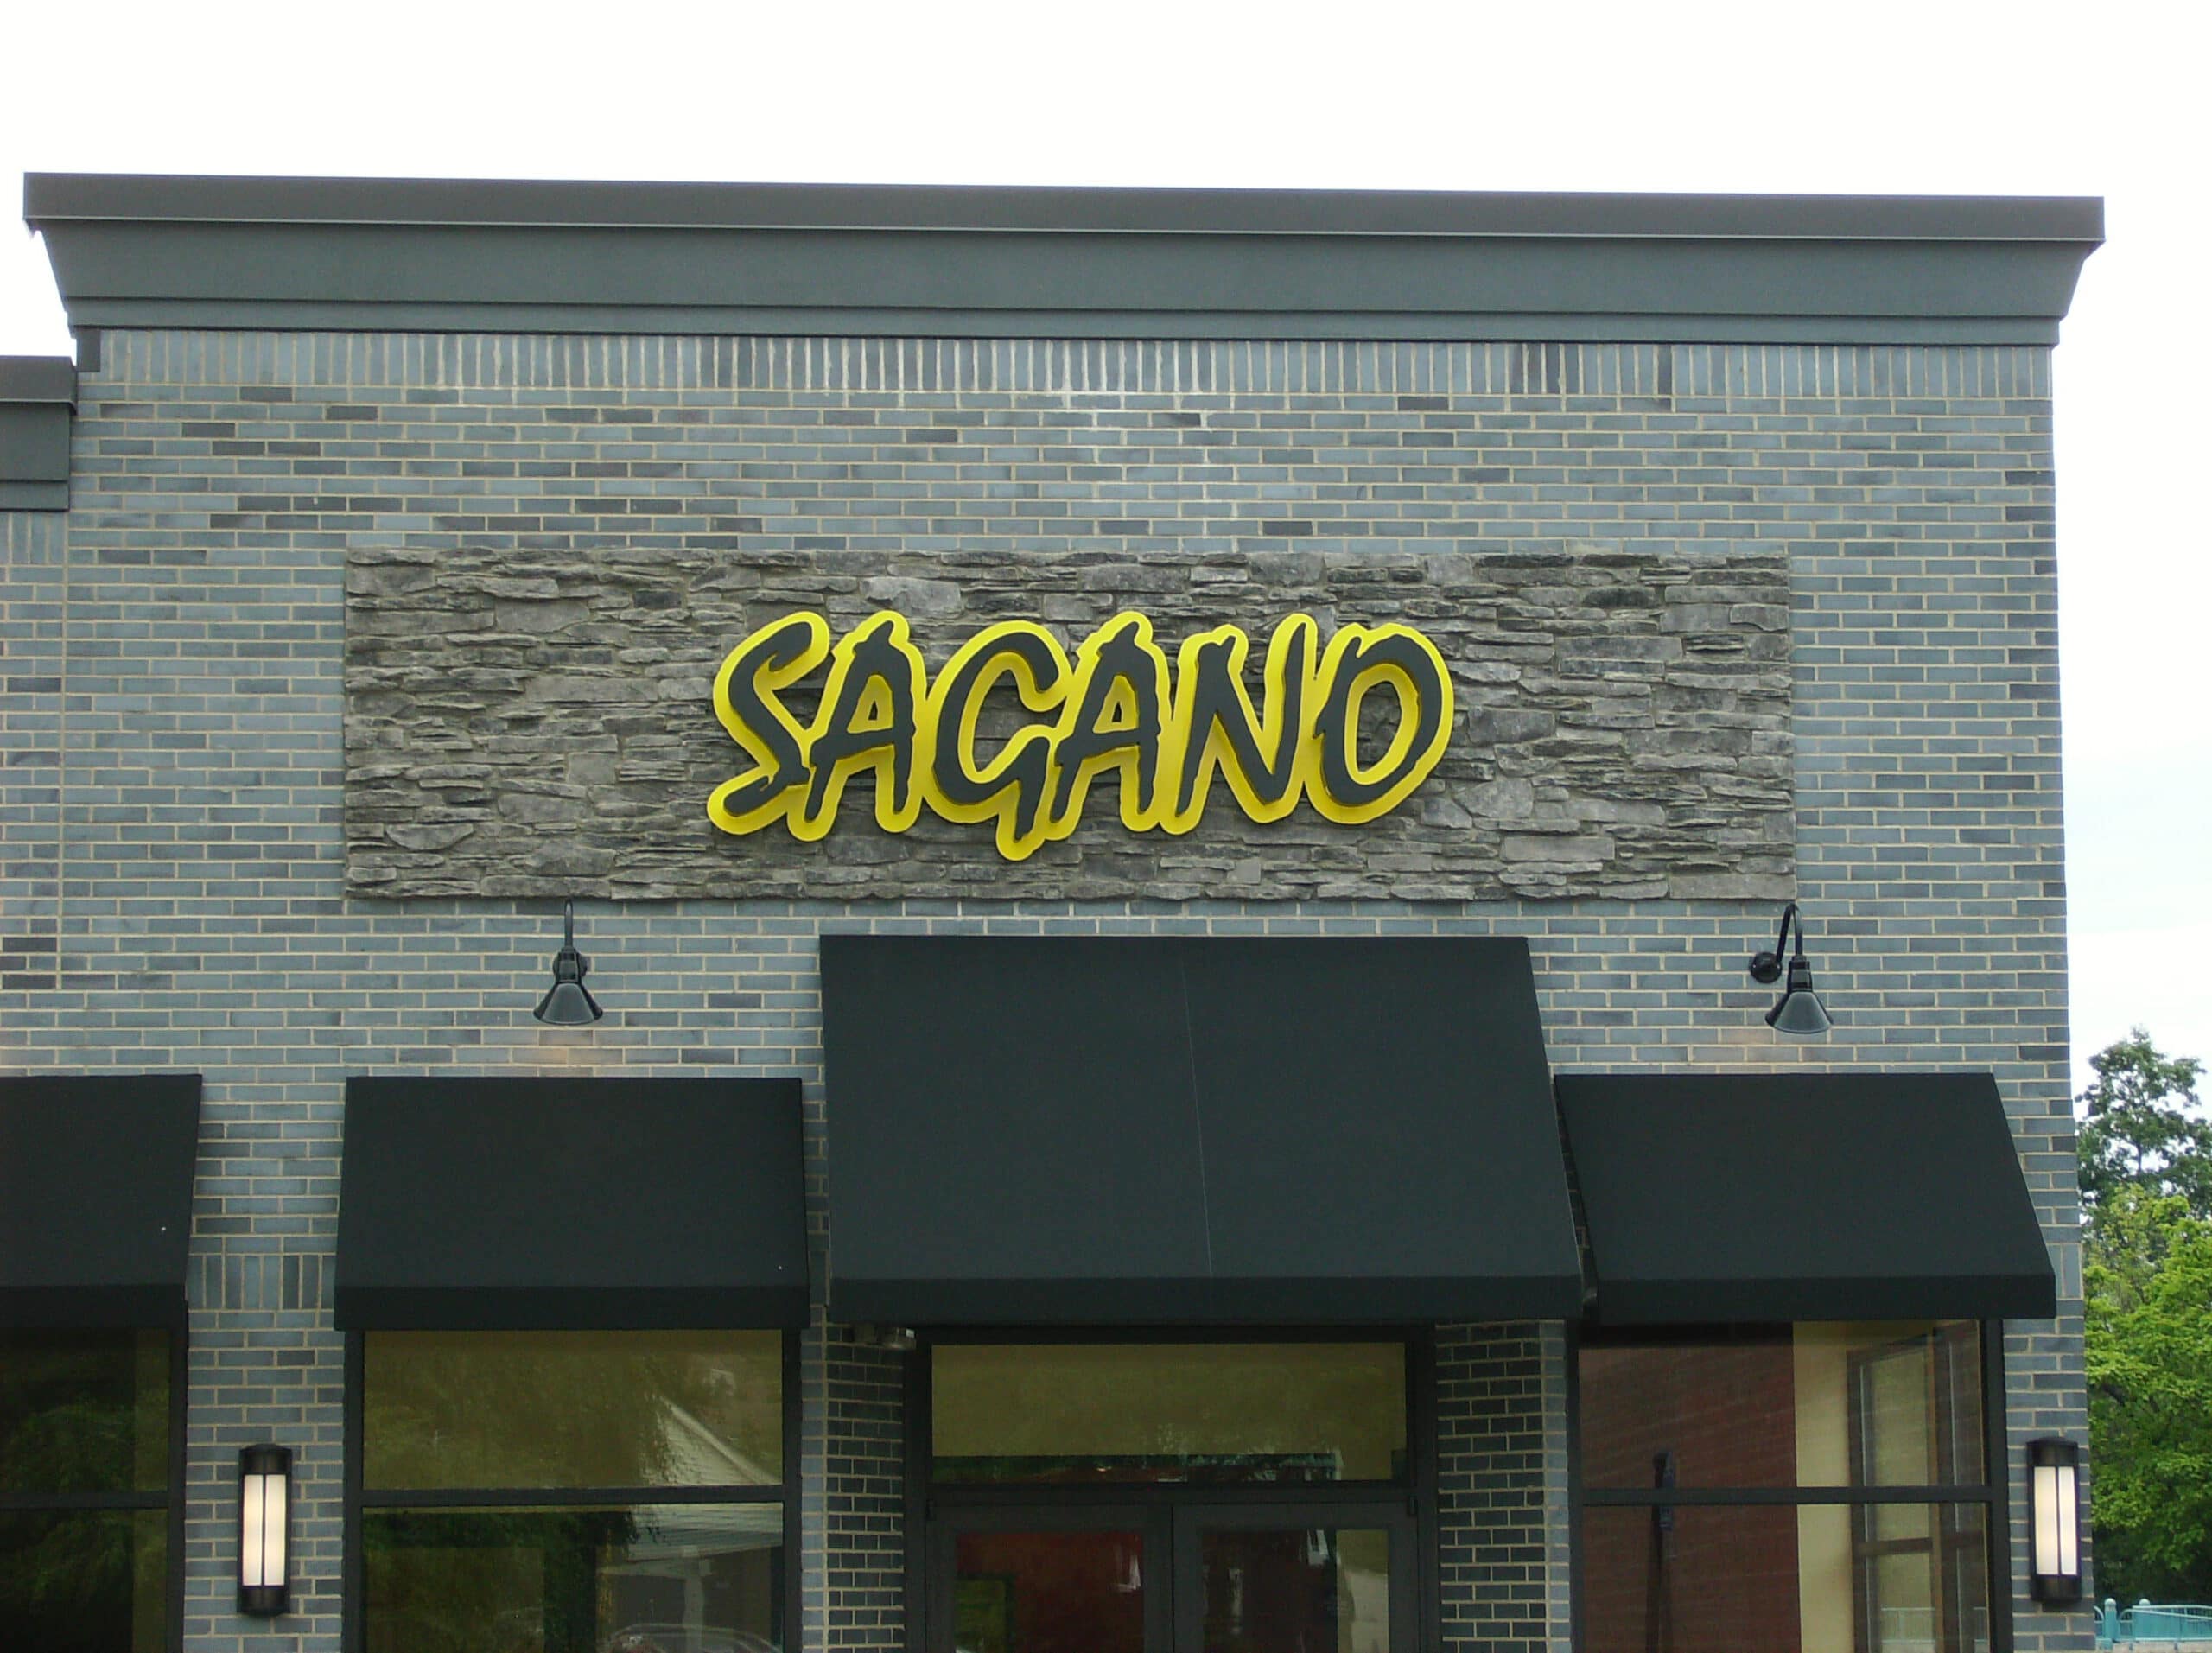 Sagano Channel Letter Sign